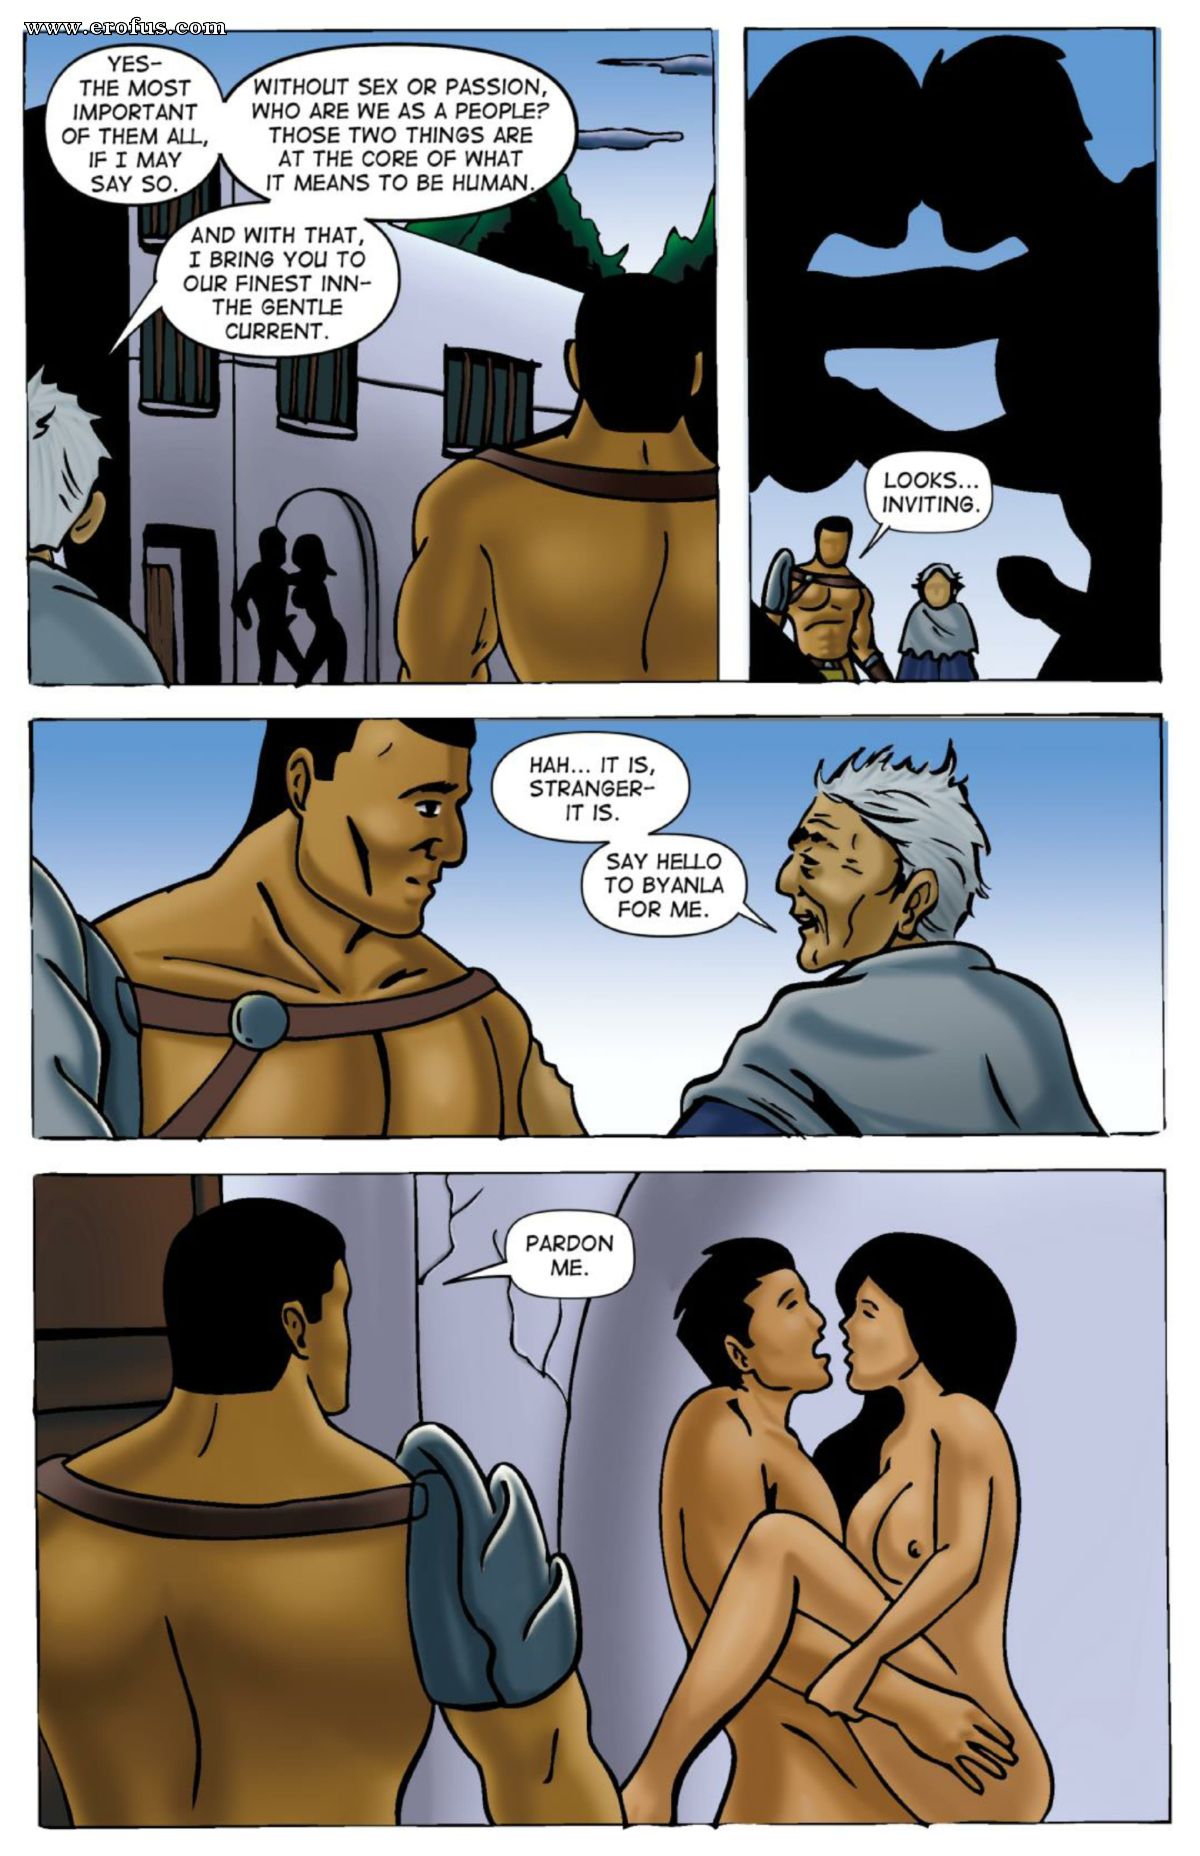 Sex Semal On Semal - Page 20 | kirtu_com-comics/gentlemen-comics/conquest-of-semal/ep-01 |  Erofus - Sex and Porn Comics